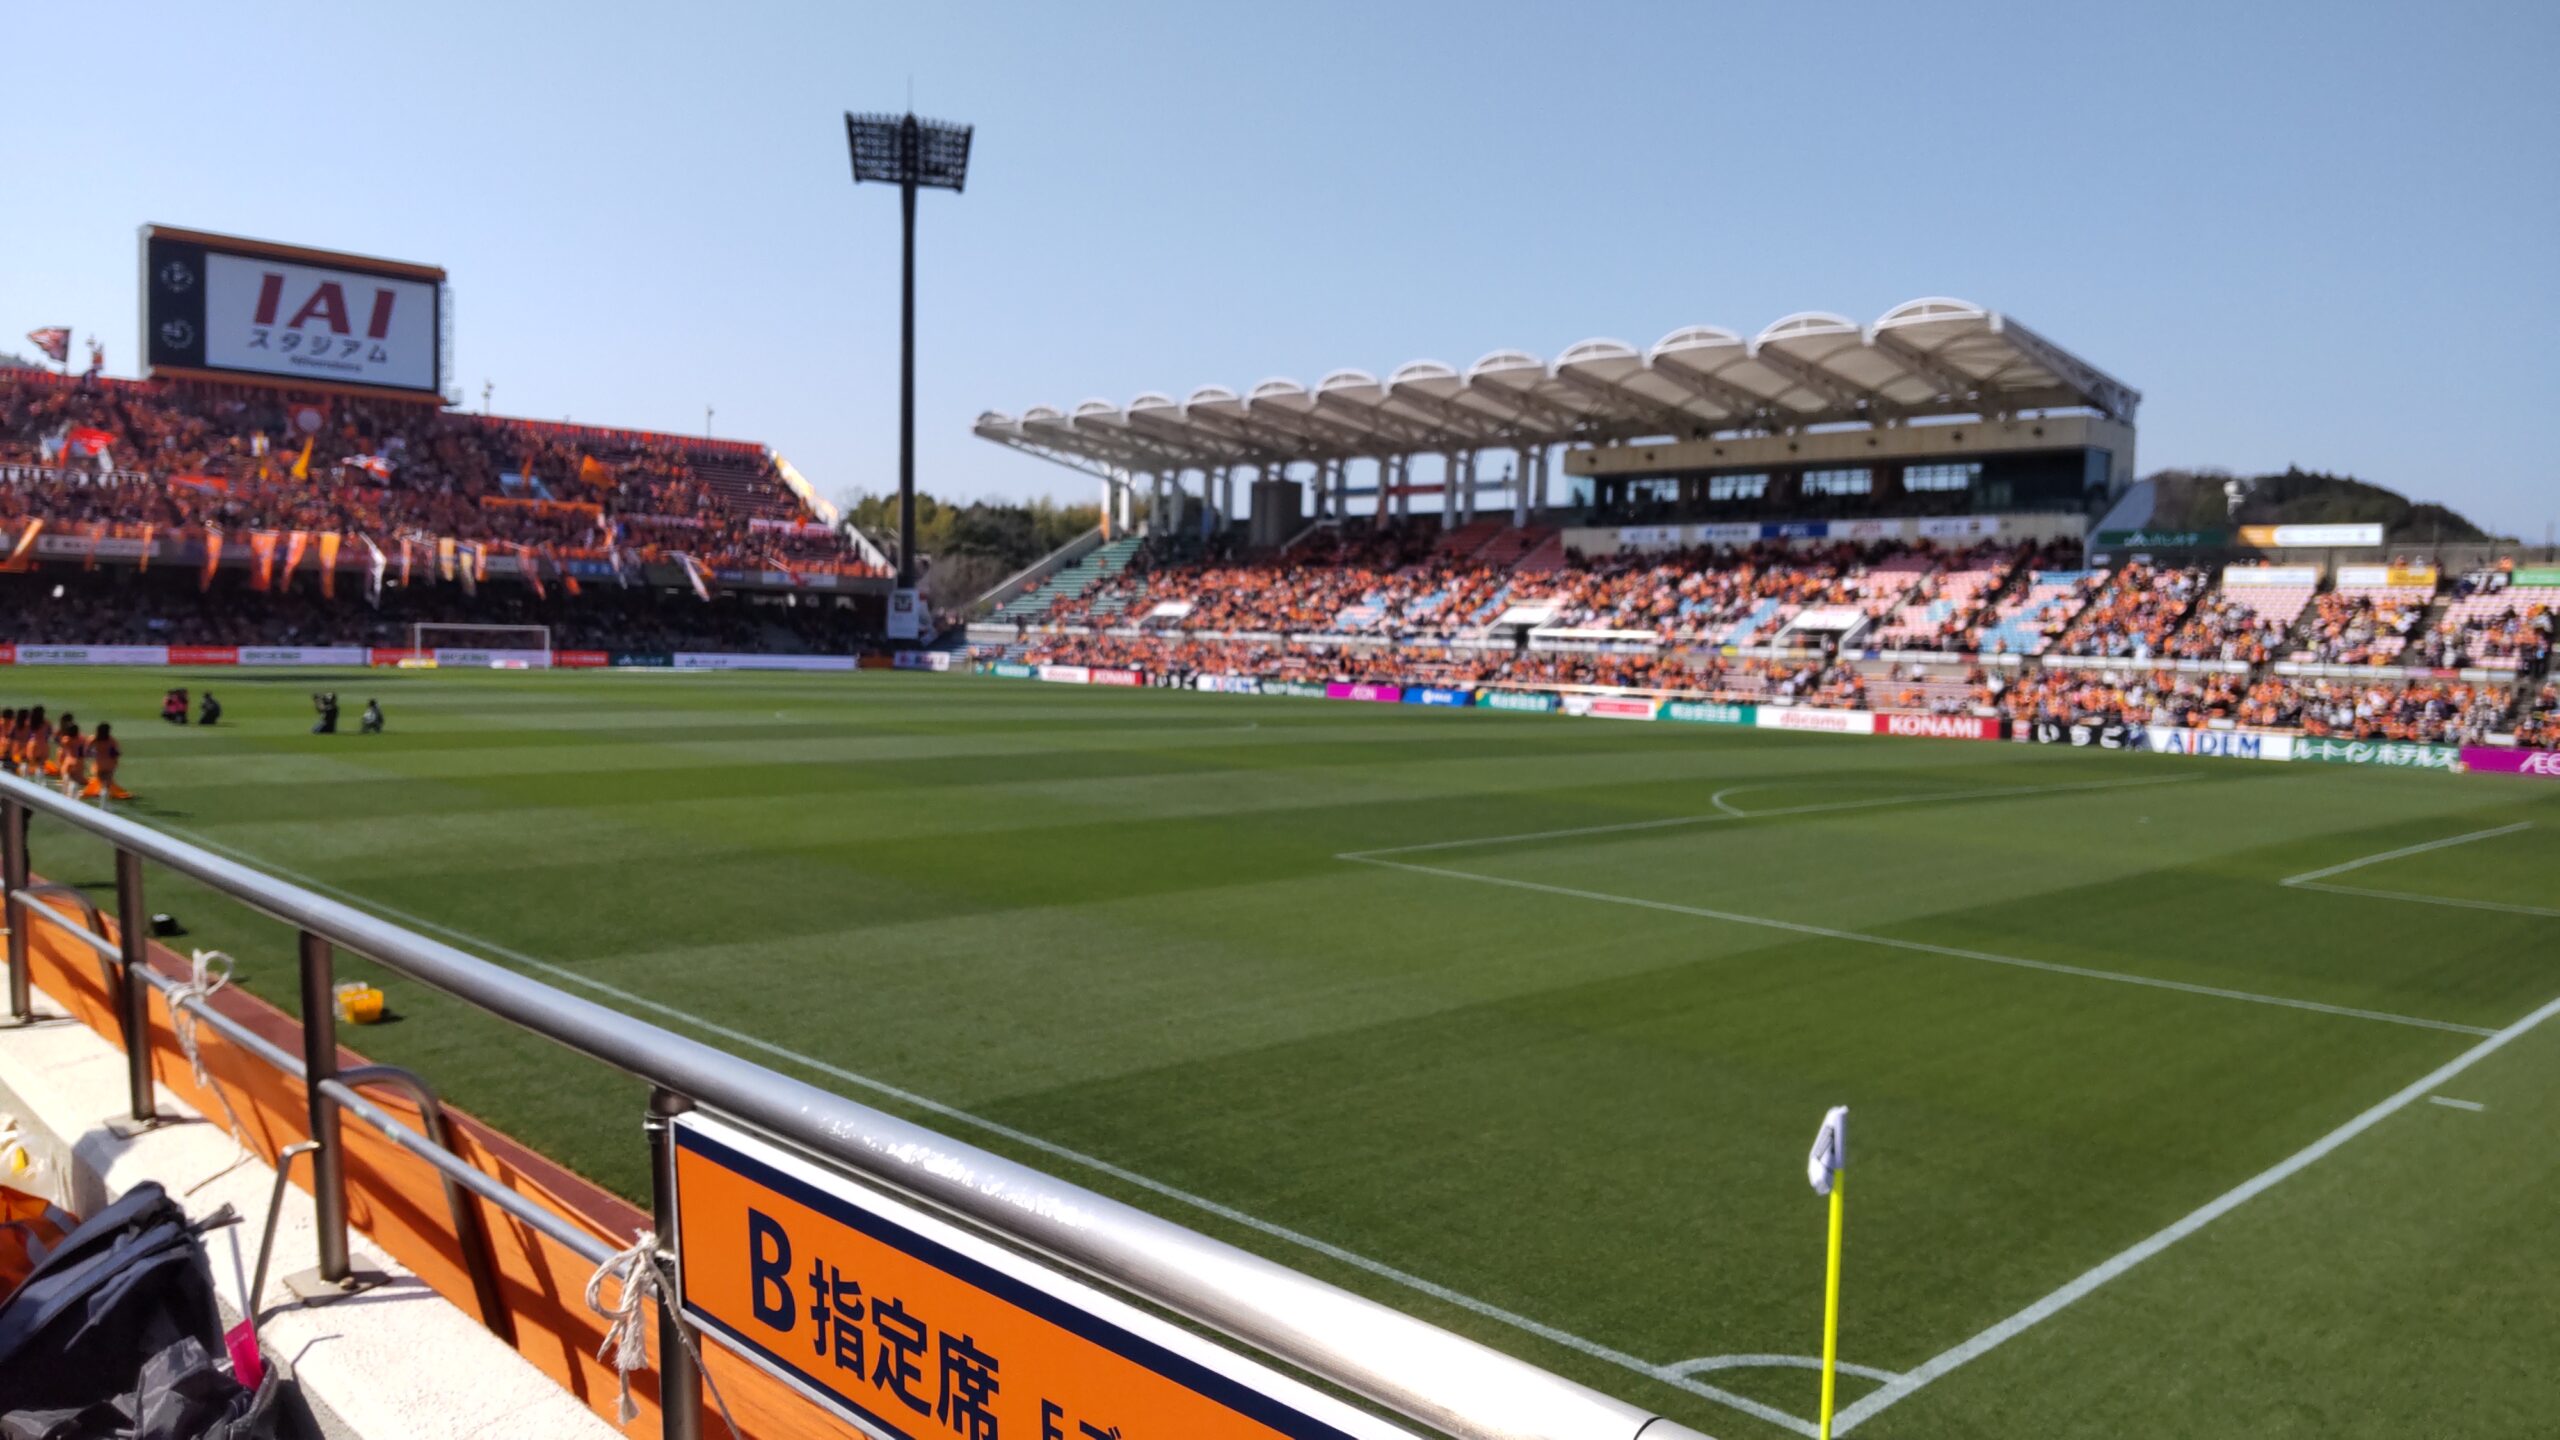 Iaiスタジアム日本平にアウェイ観戦してきた体験談 Yuのカップルブログ